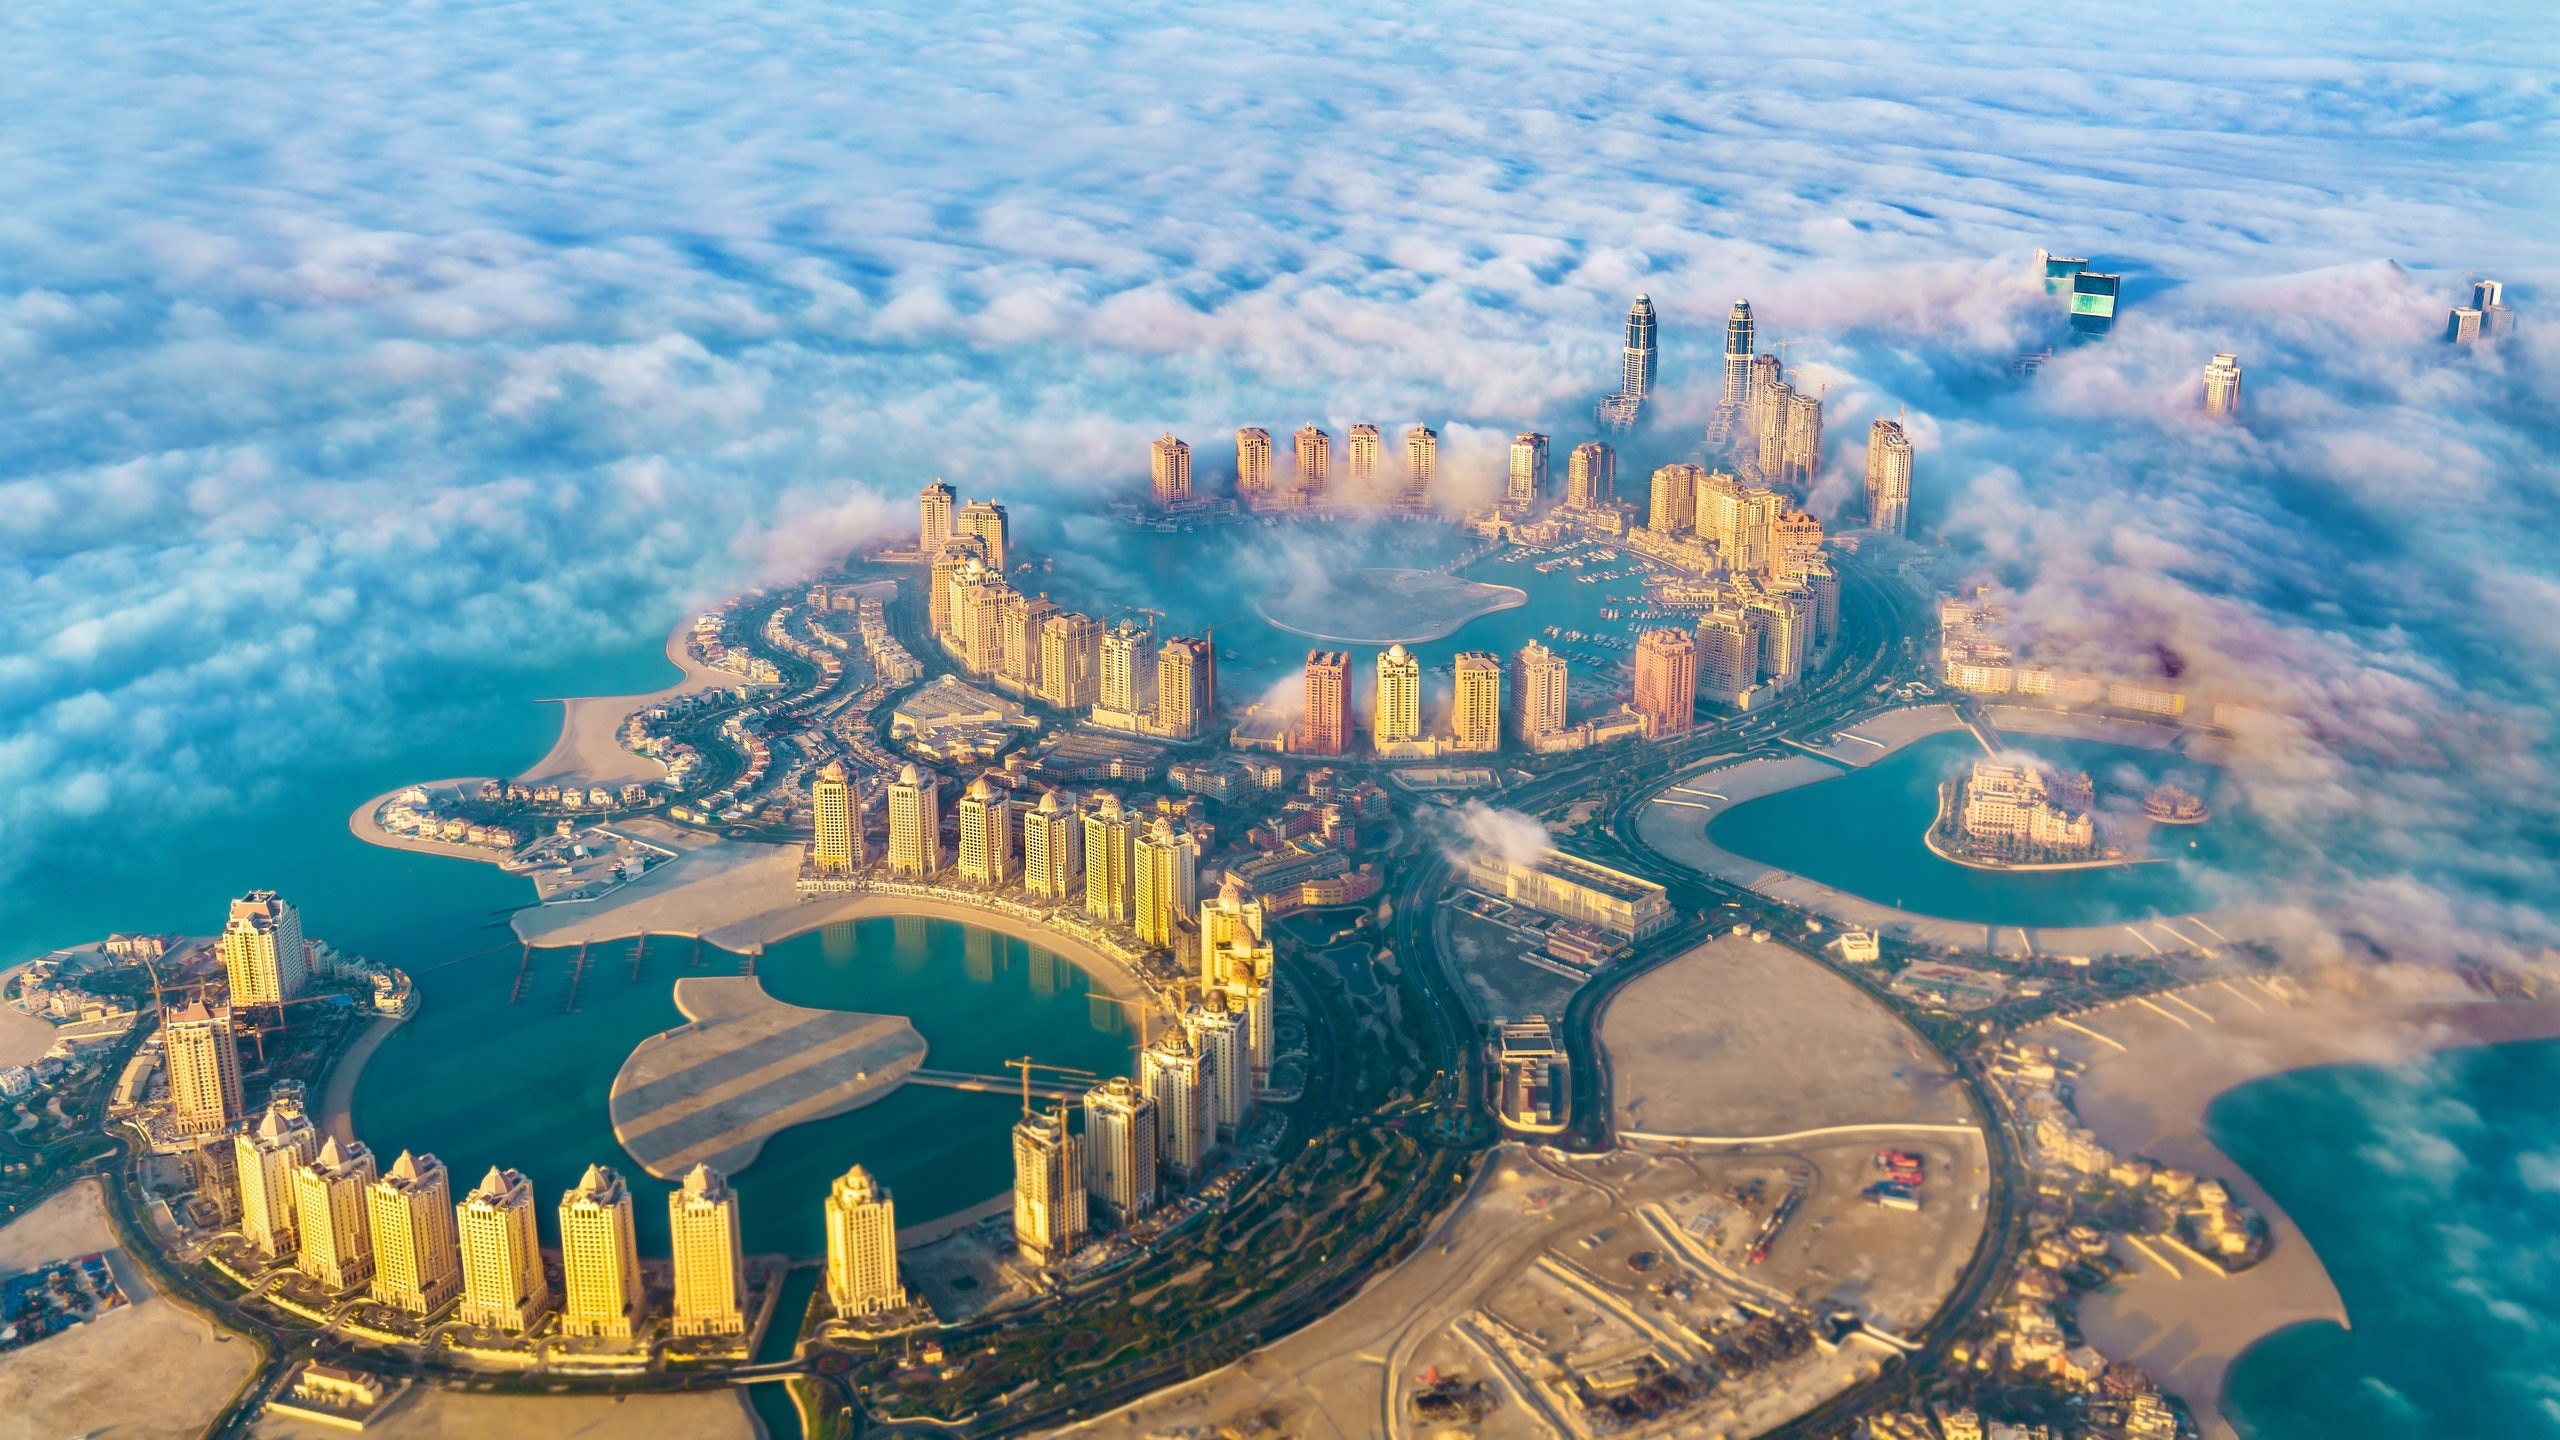 "لؤلؤة قطر"،  سلسلة من الجزر الاصطناعية تشكل مدينة متكاملة تقع على الجانب الشمالي لشاطئ مدينة الدوحة القطرية